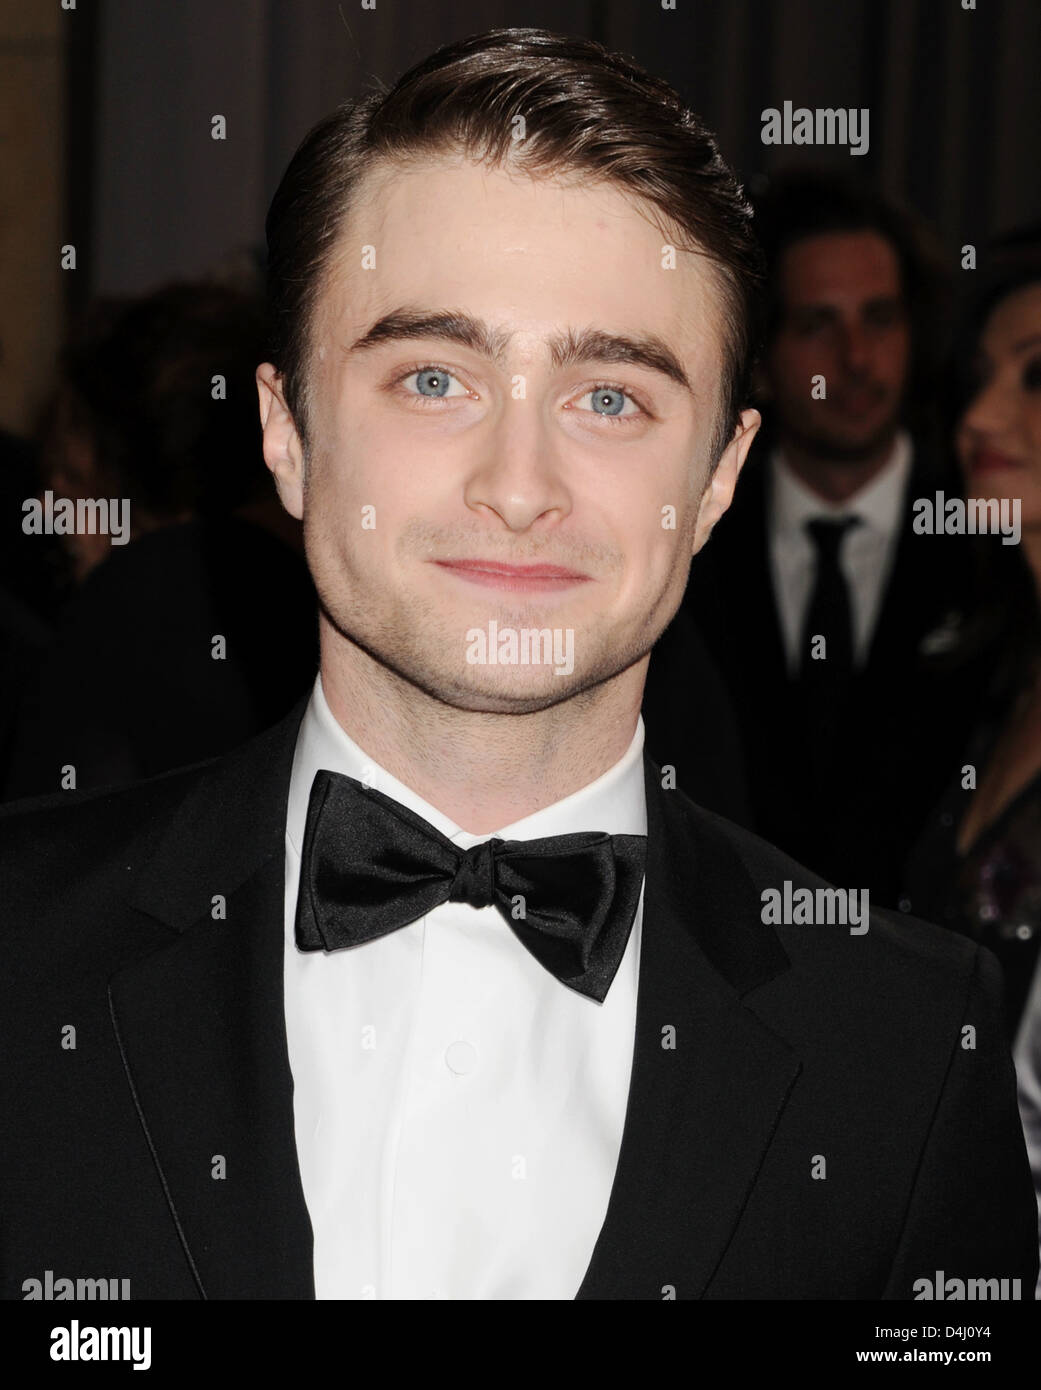 DANIEL Radcliffe Regno Unito attore di cinema nel febbraio 2013. Foto di Jeffrey Mayer Foto Stock